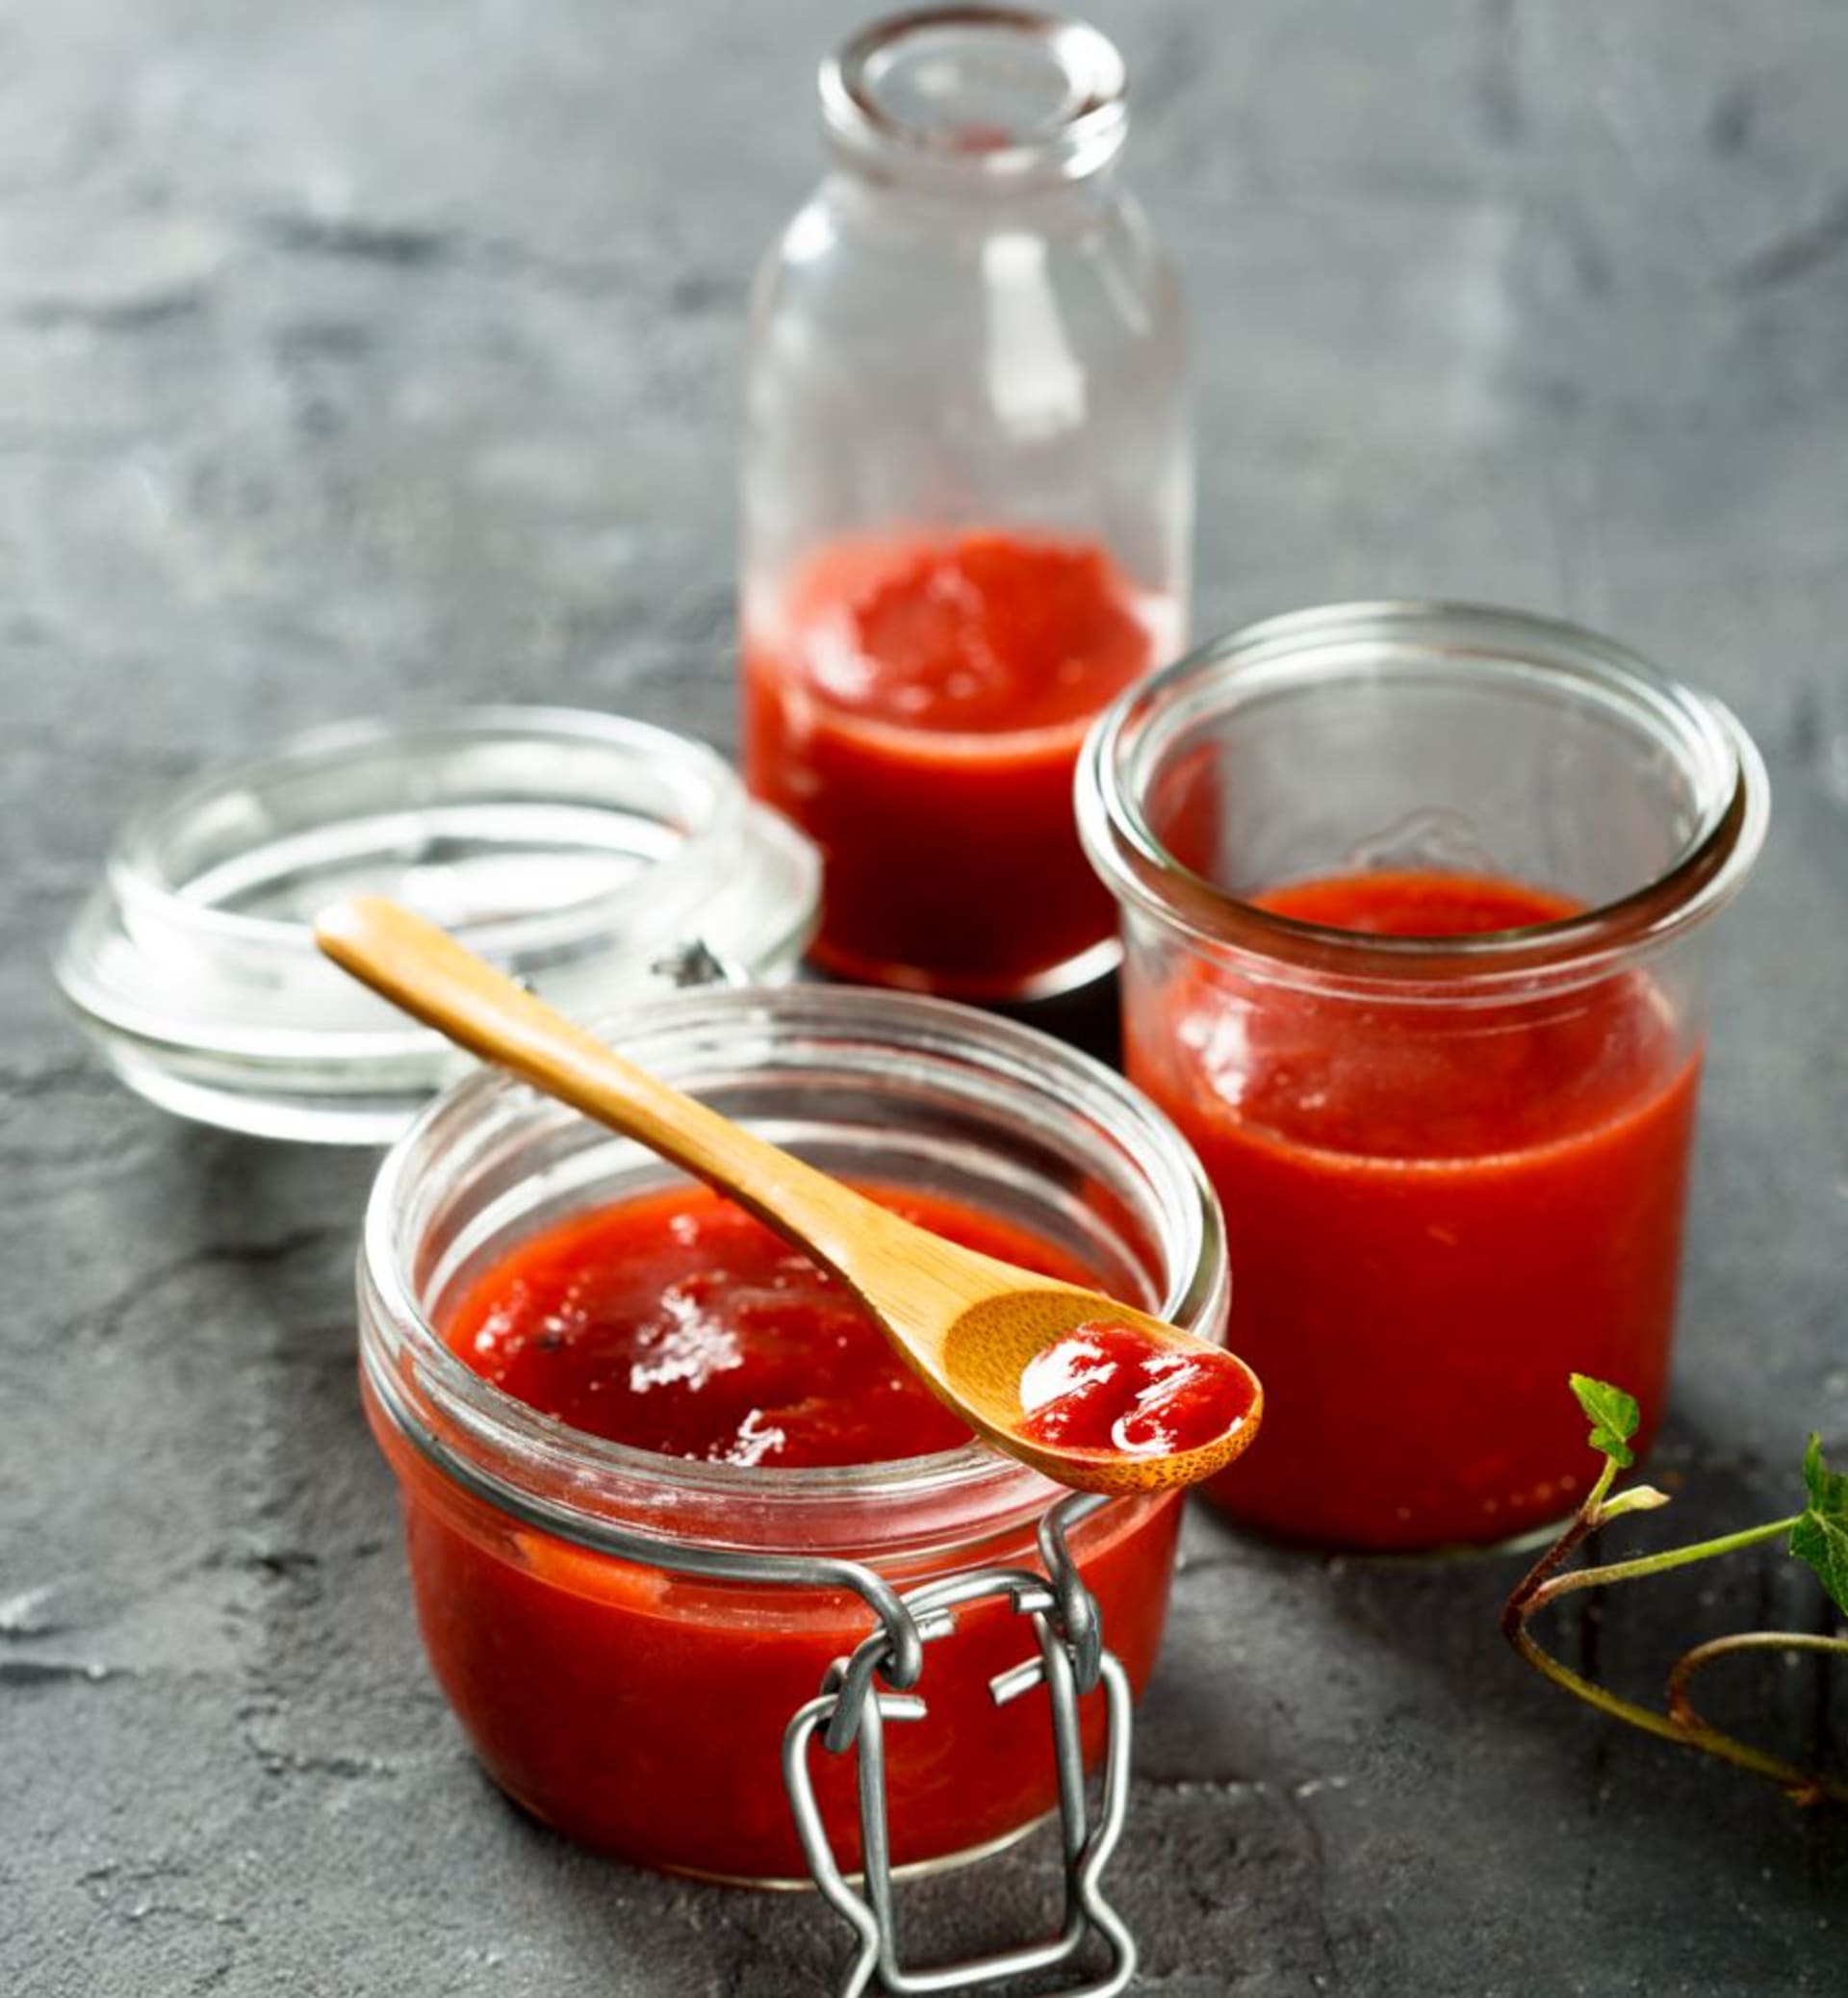 Domácí pečený kečup  jednoduchá příprava v troubě a výraznější chuť zralých rajčat